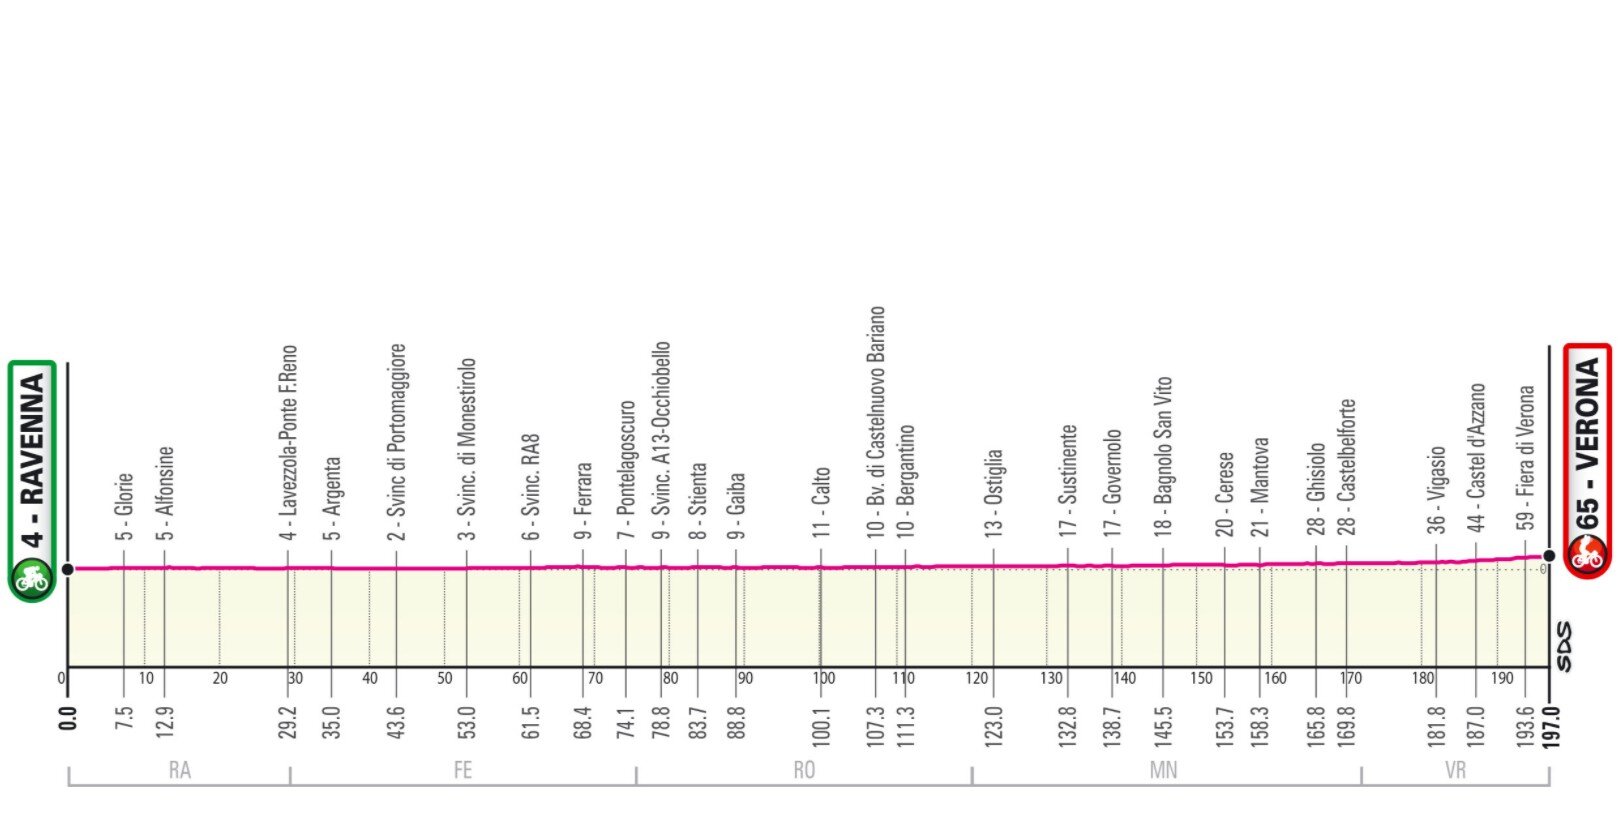 Etapa 13 Giro Italia 2021